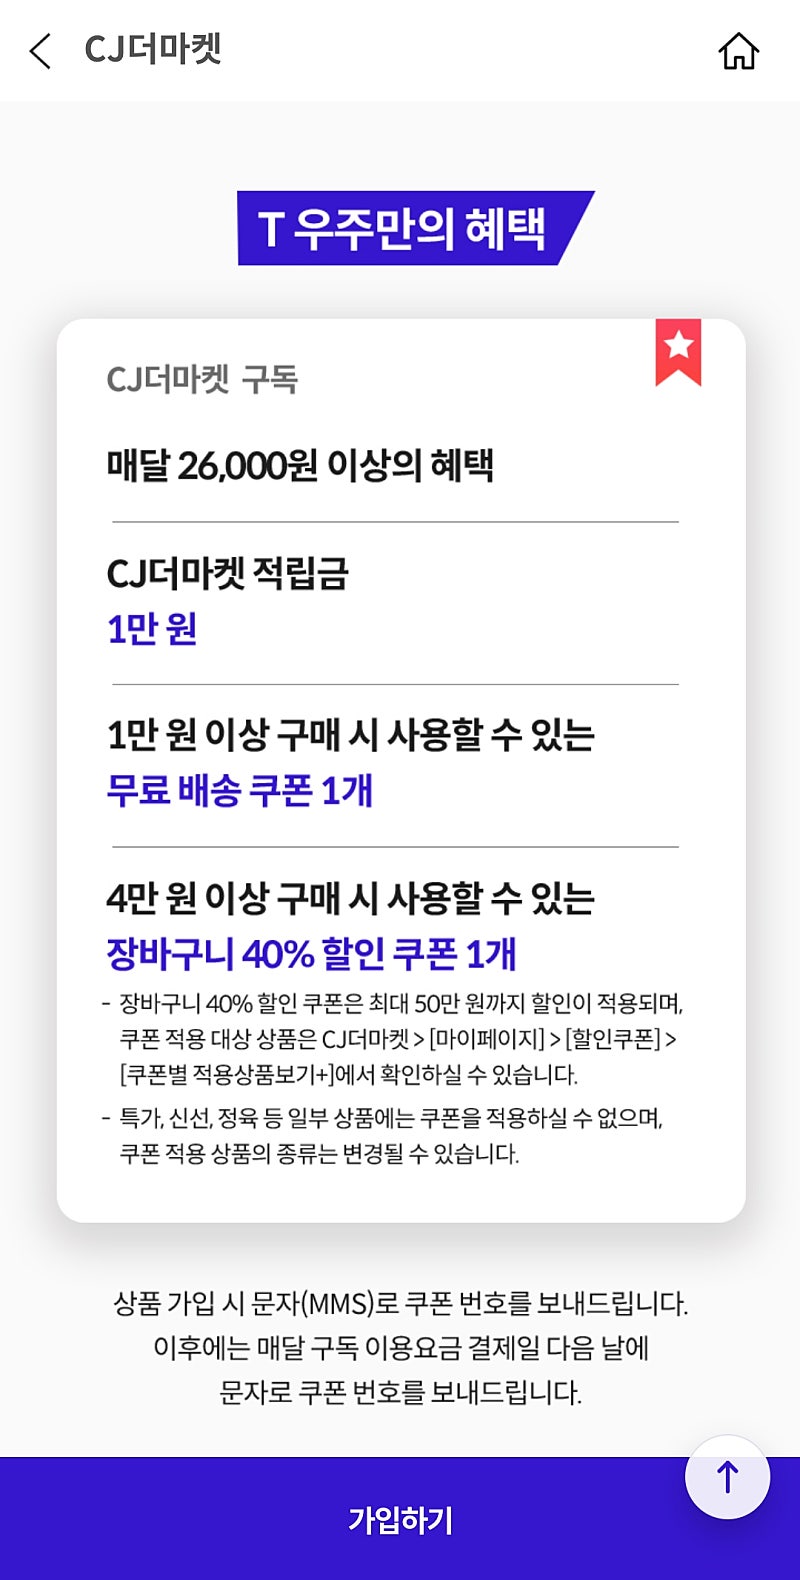 우주패스 CJ더마켓 3종쿠폰 2장 일괄 13000원에 판매